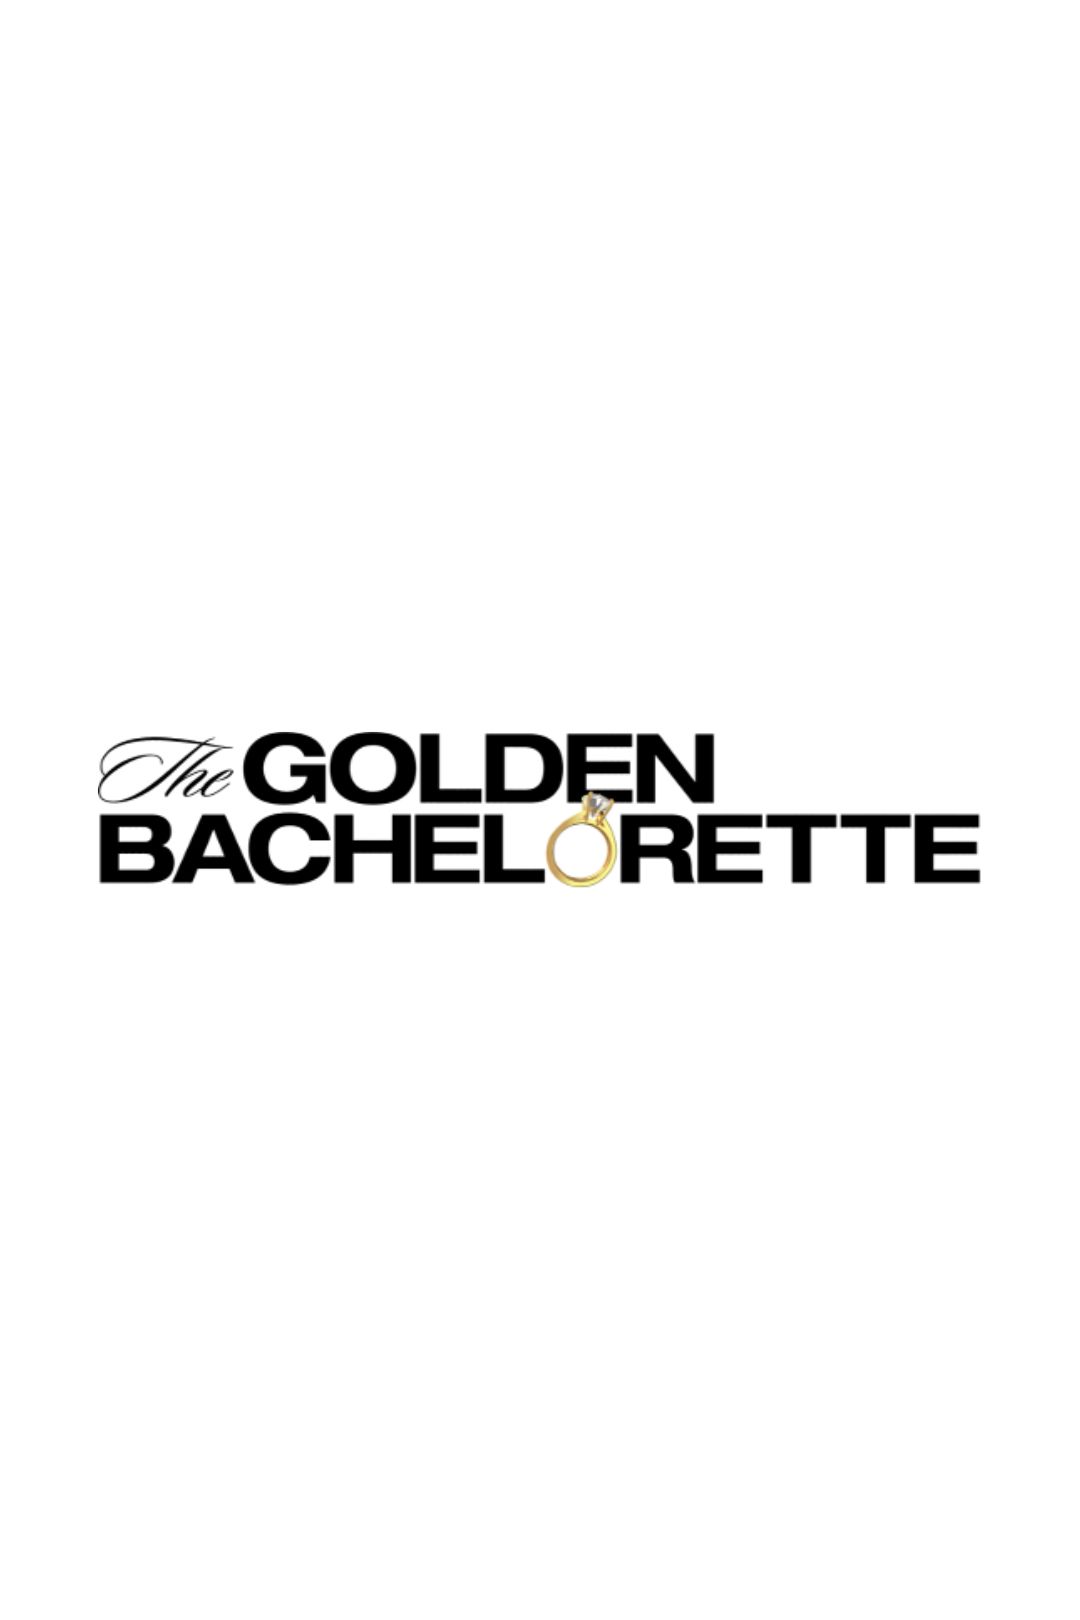 The Golden Bachelorette Temp Logo Poster